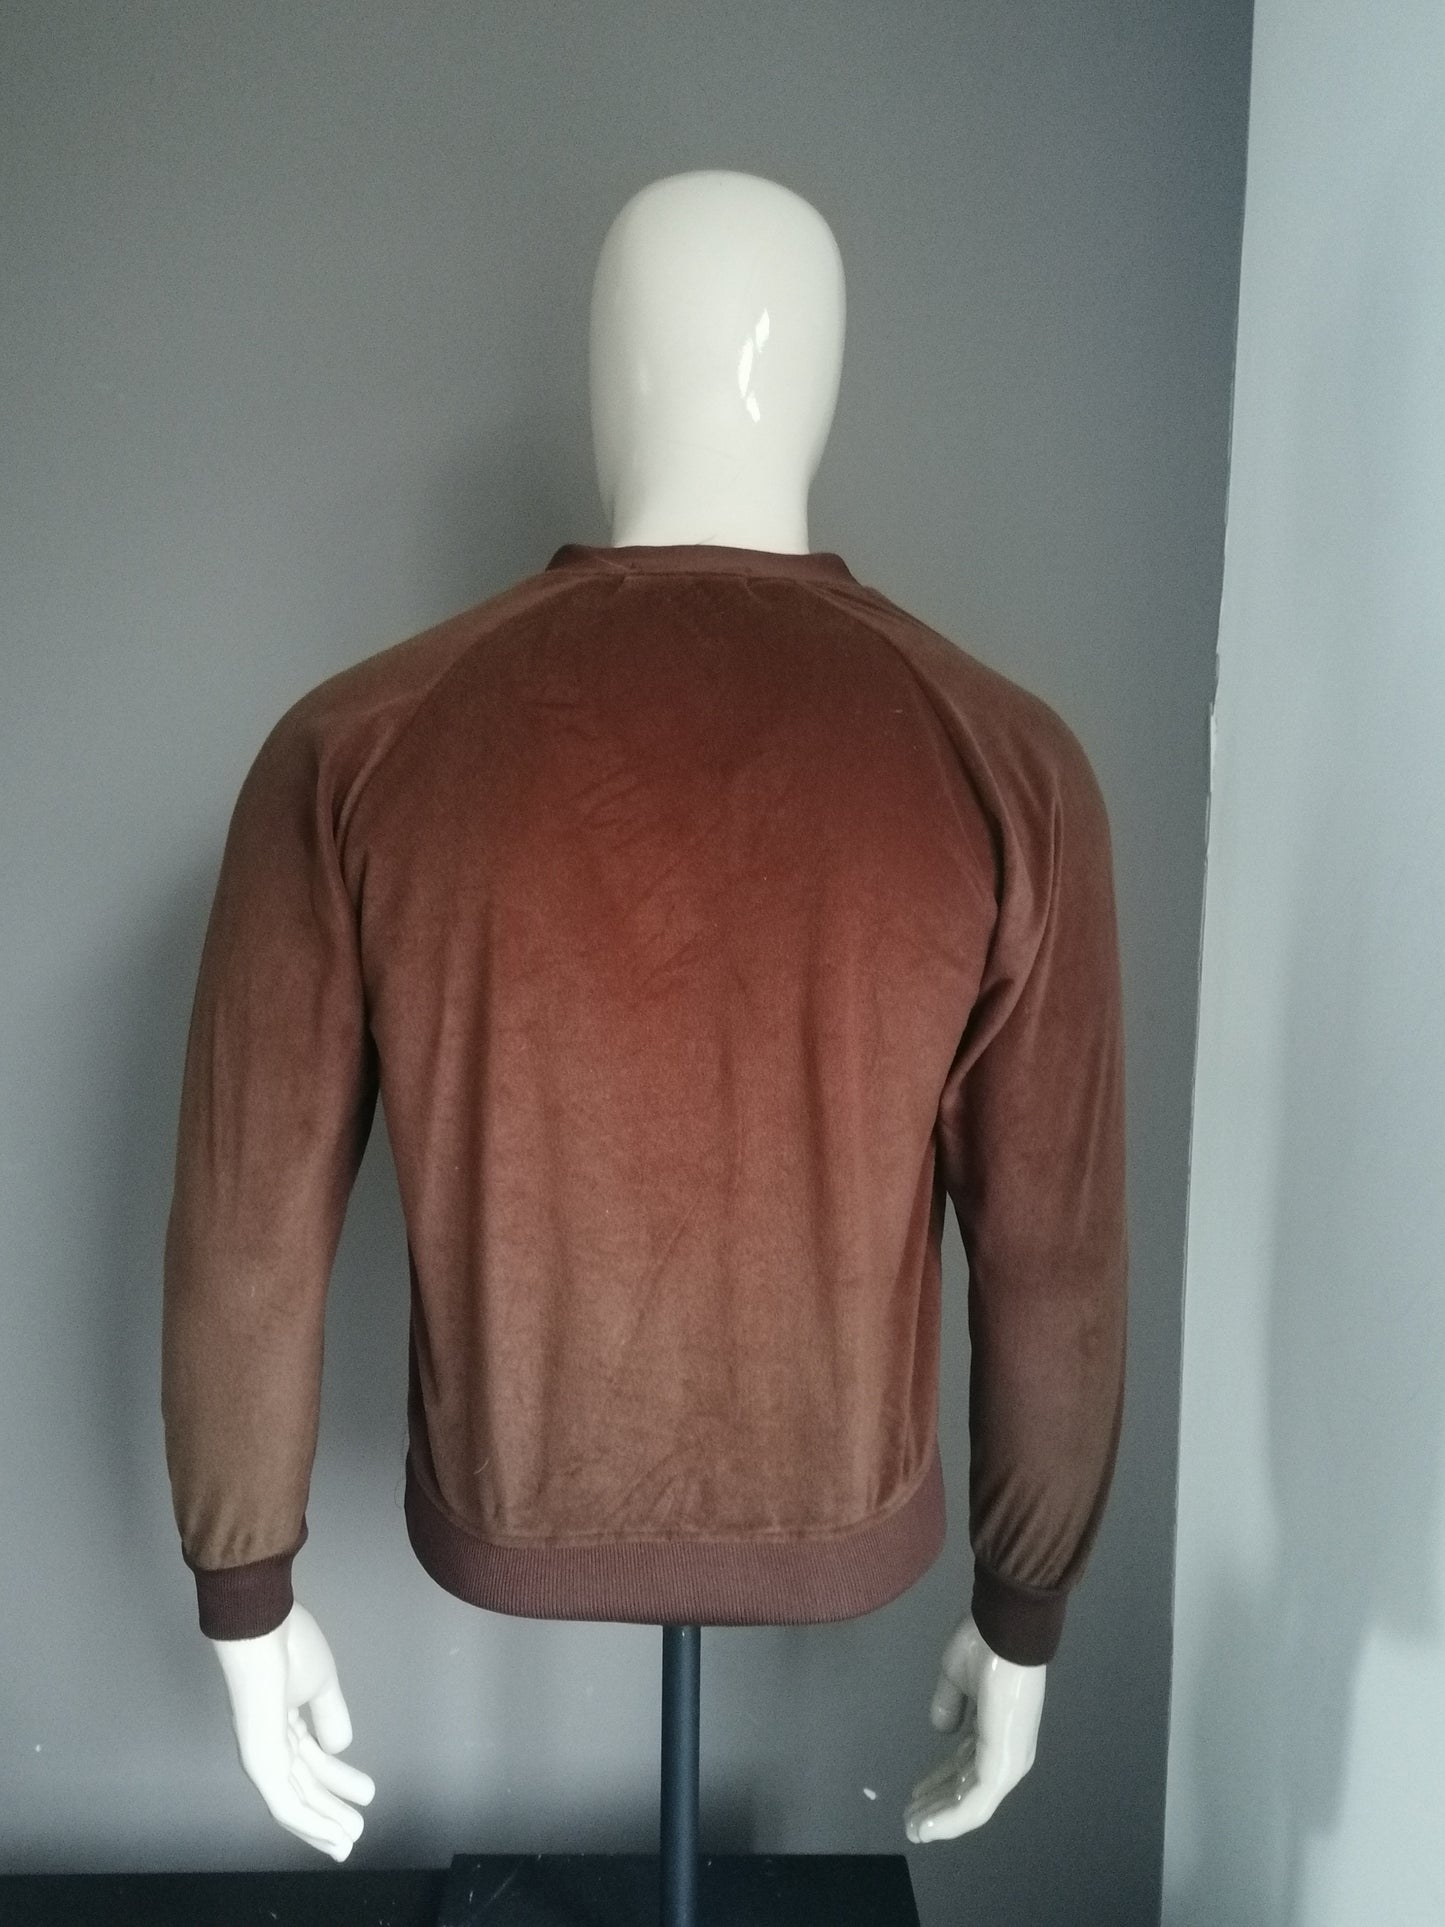 Tommy Aaron Samt / Velor-Pullover mit V-Ausschnitt. Braun gefärbt. Größe S.